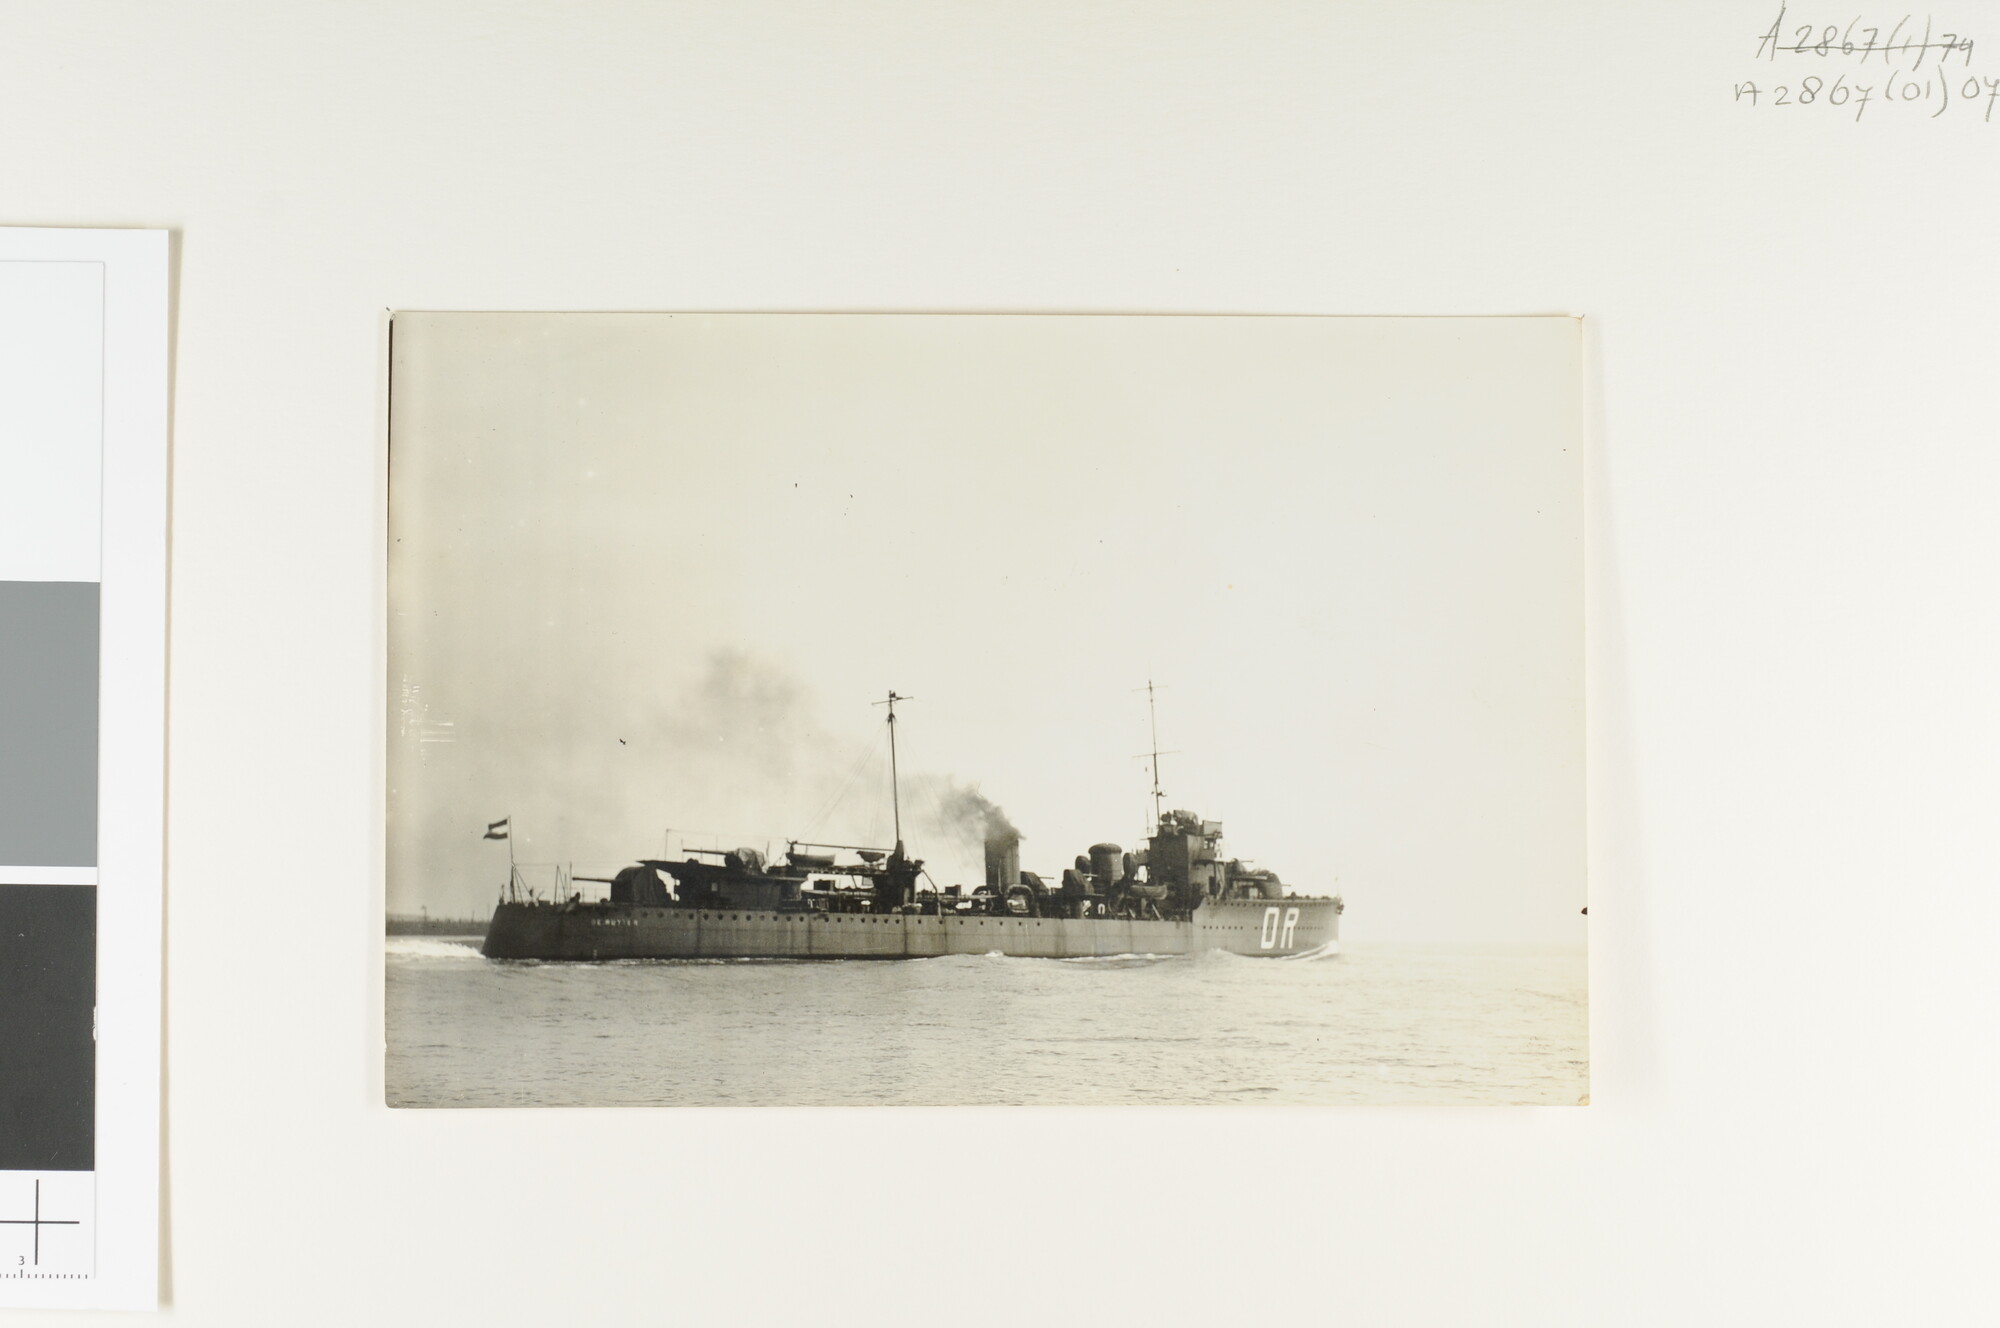 A.2867(01)074; De torpedobootjager Hr.Ms. 'De Ruyter' op weg voor de proefvaart; foto